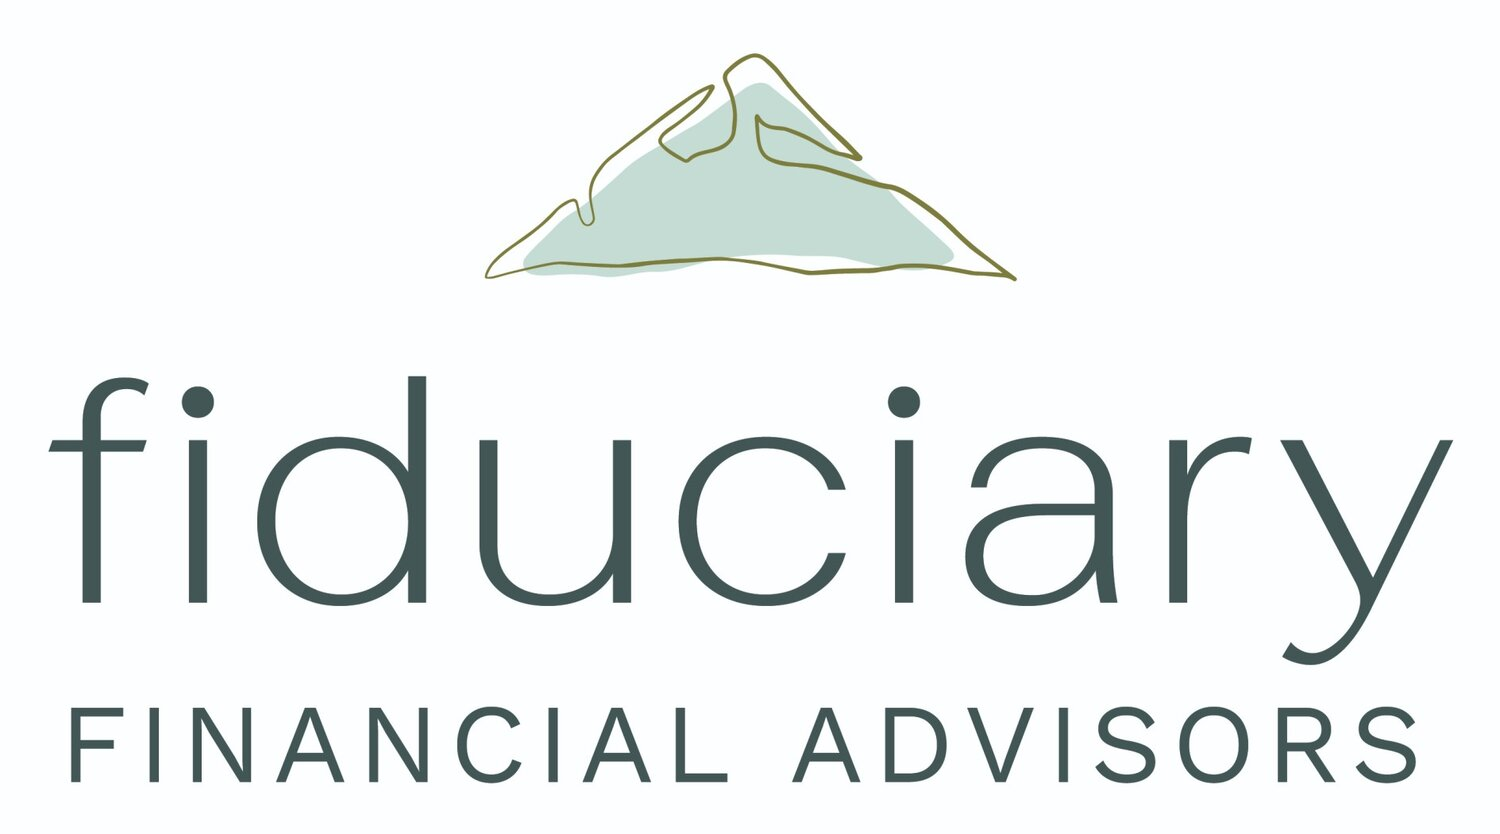 Fiduciary Financial Advisors